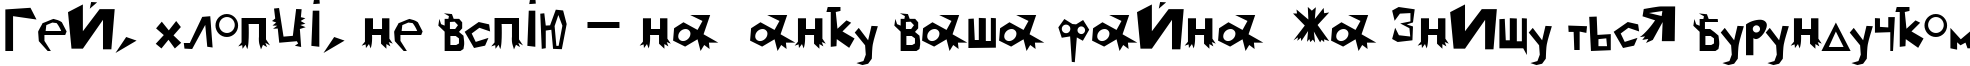 Пример написания шрифтом ProbbariusC текста на украинском